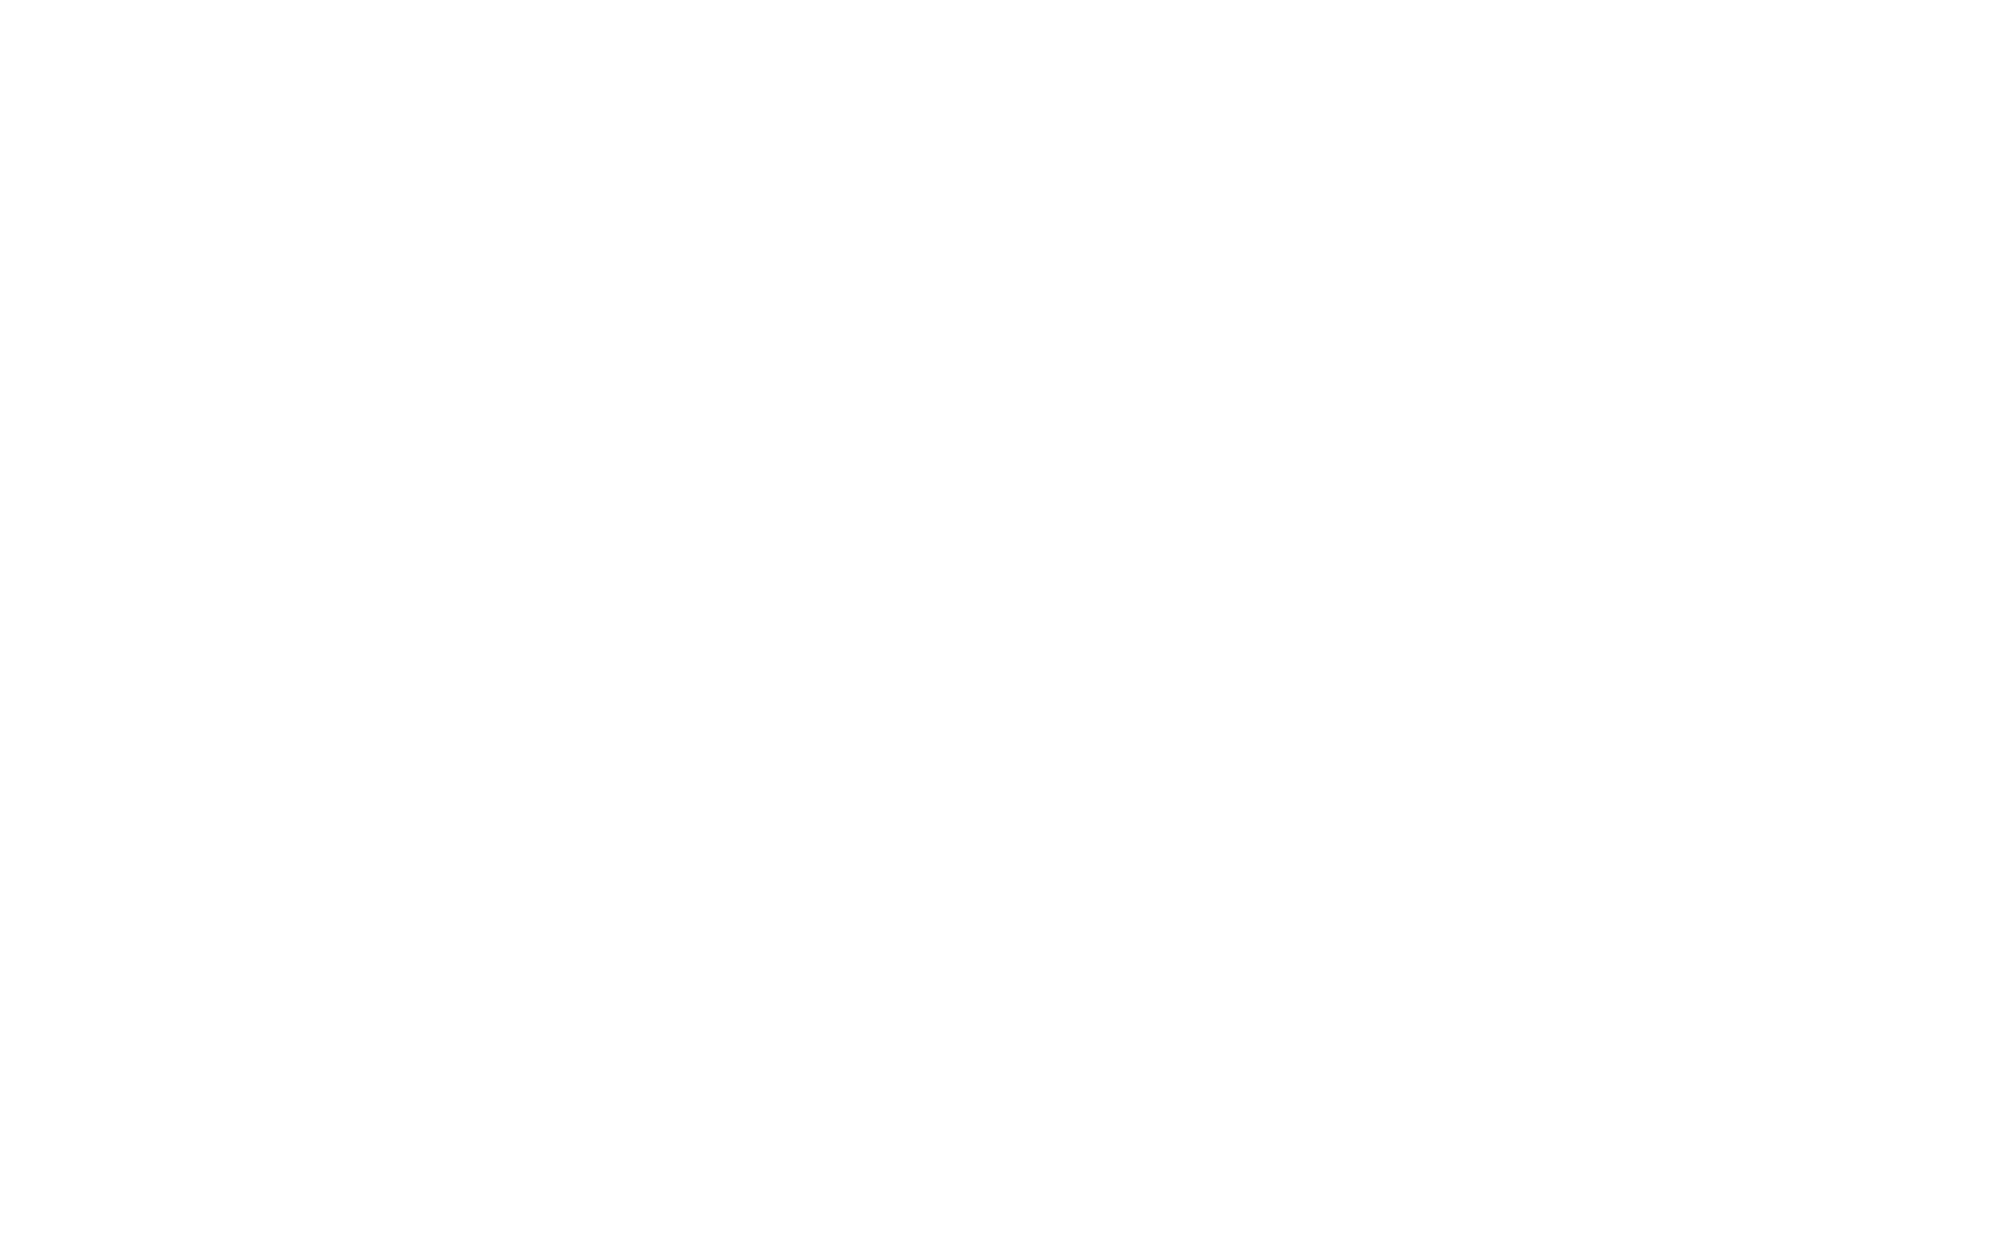 Dott.ssa Alessia Simone